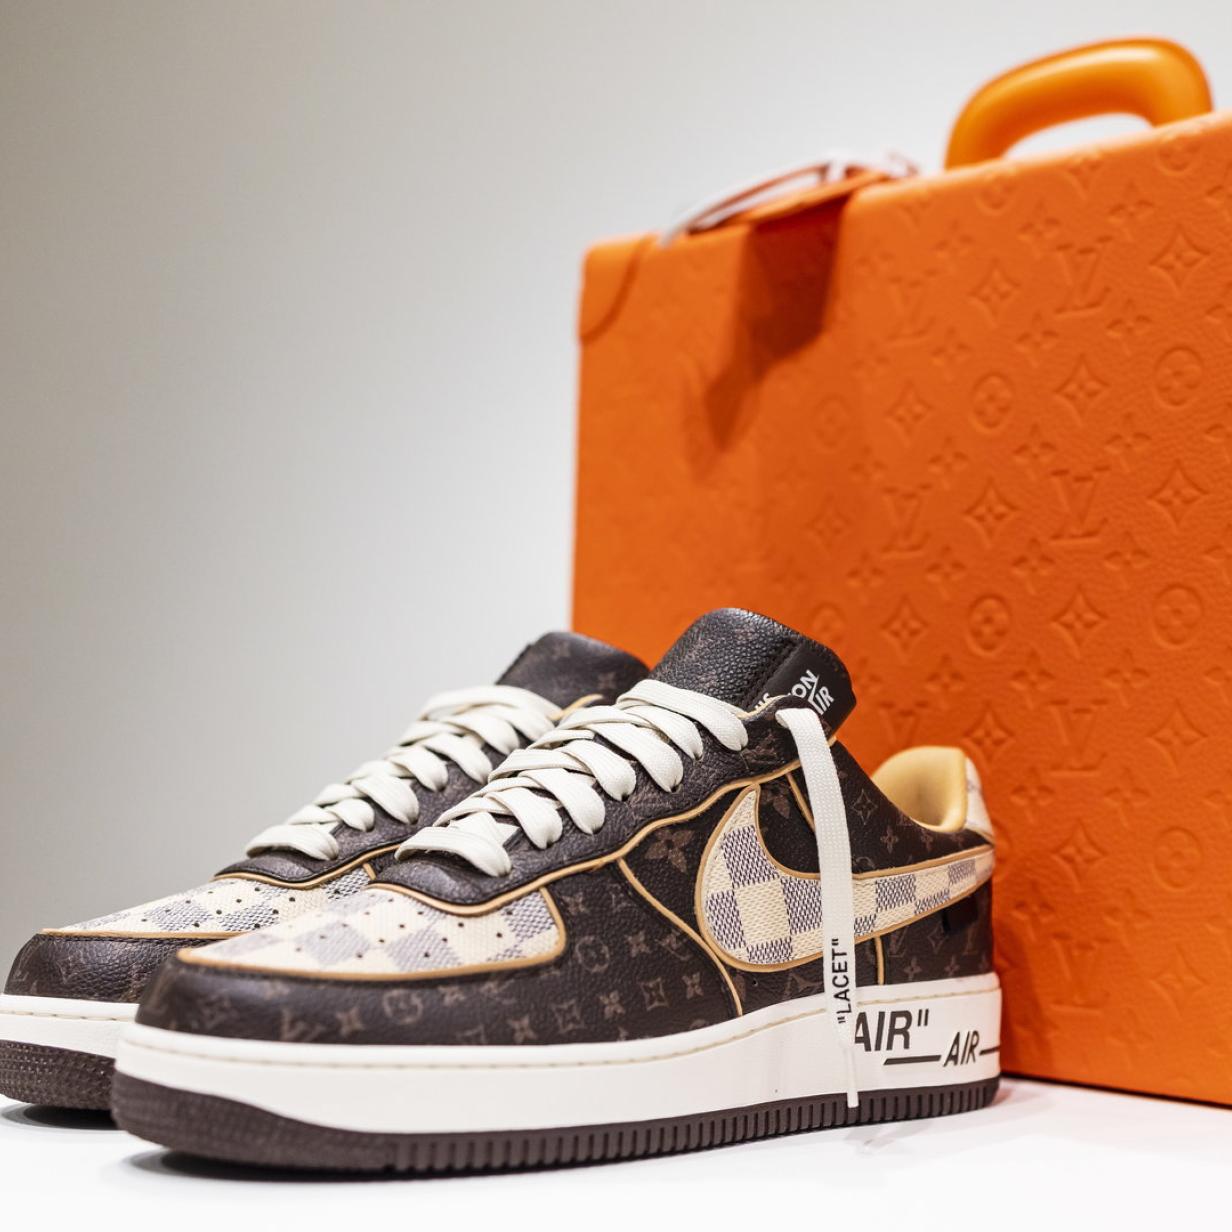 Originale Louis Vuitton,Nike Schuhe mit Bestätigung in Bayern